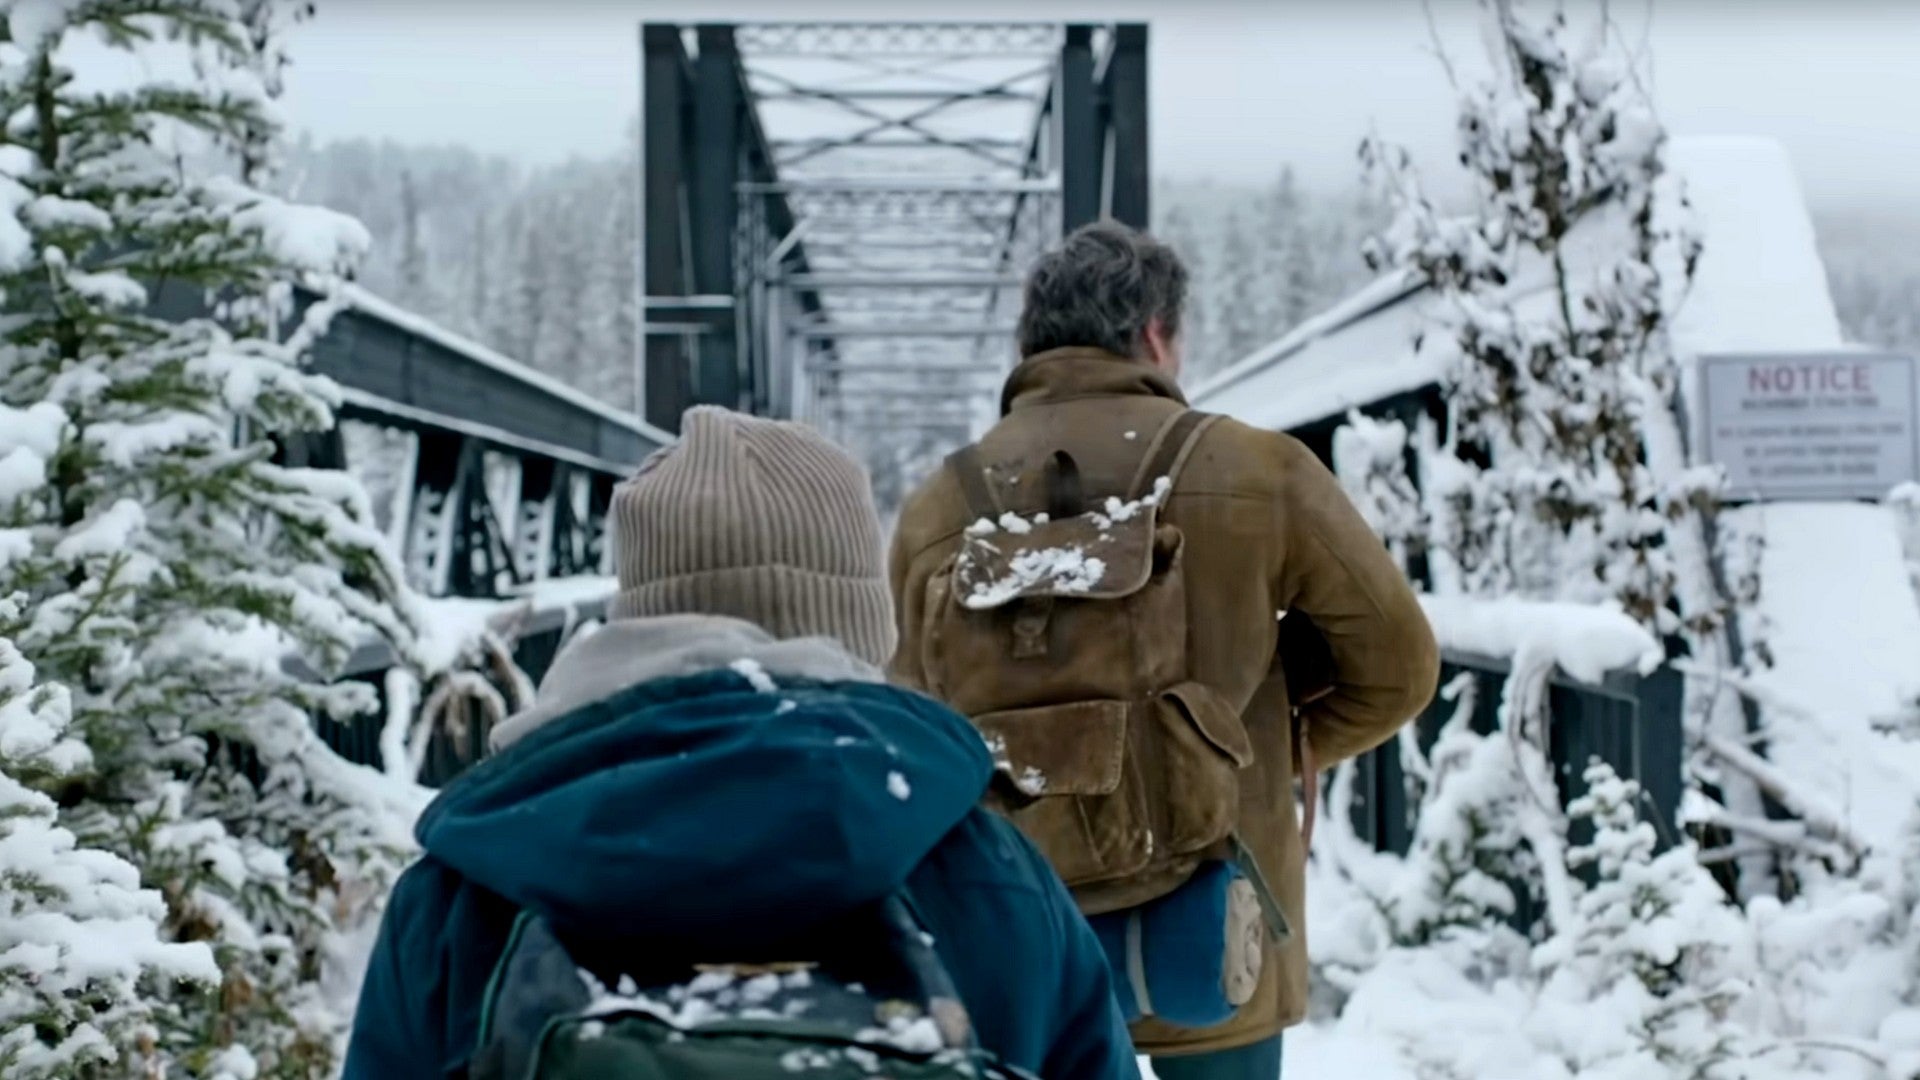 Bilder zu The Last of Us: HBO-Video zeigt erste bewegte Bilder aus der Serie